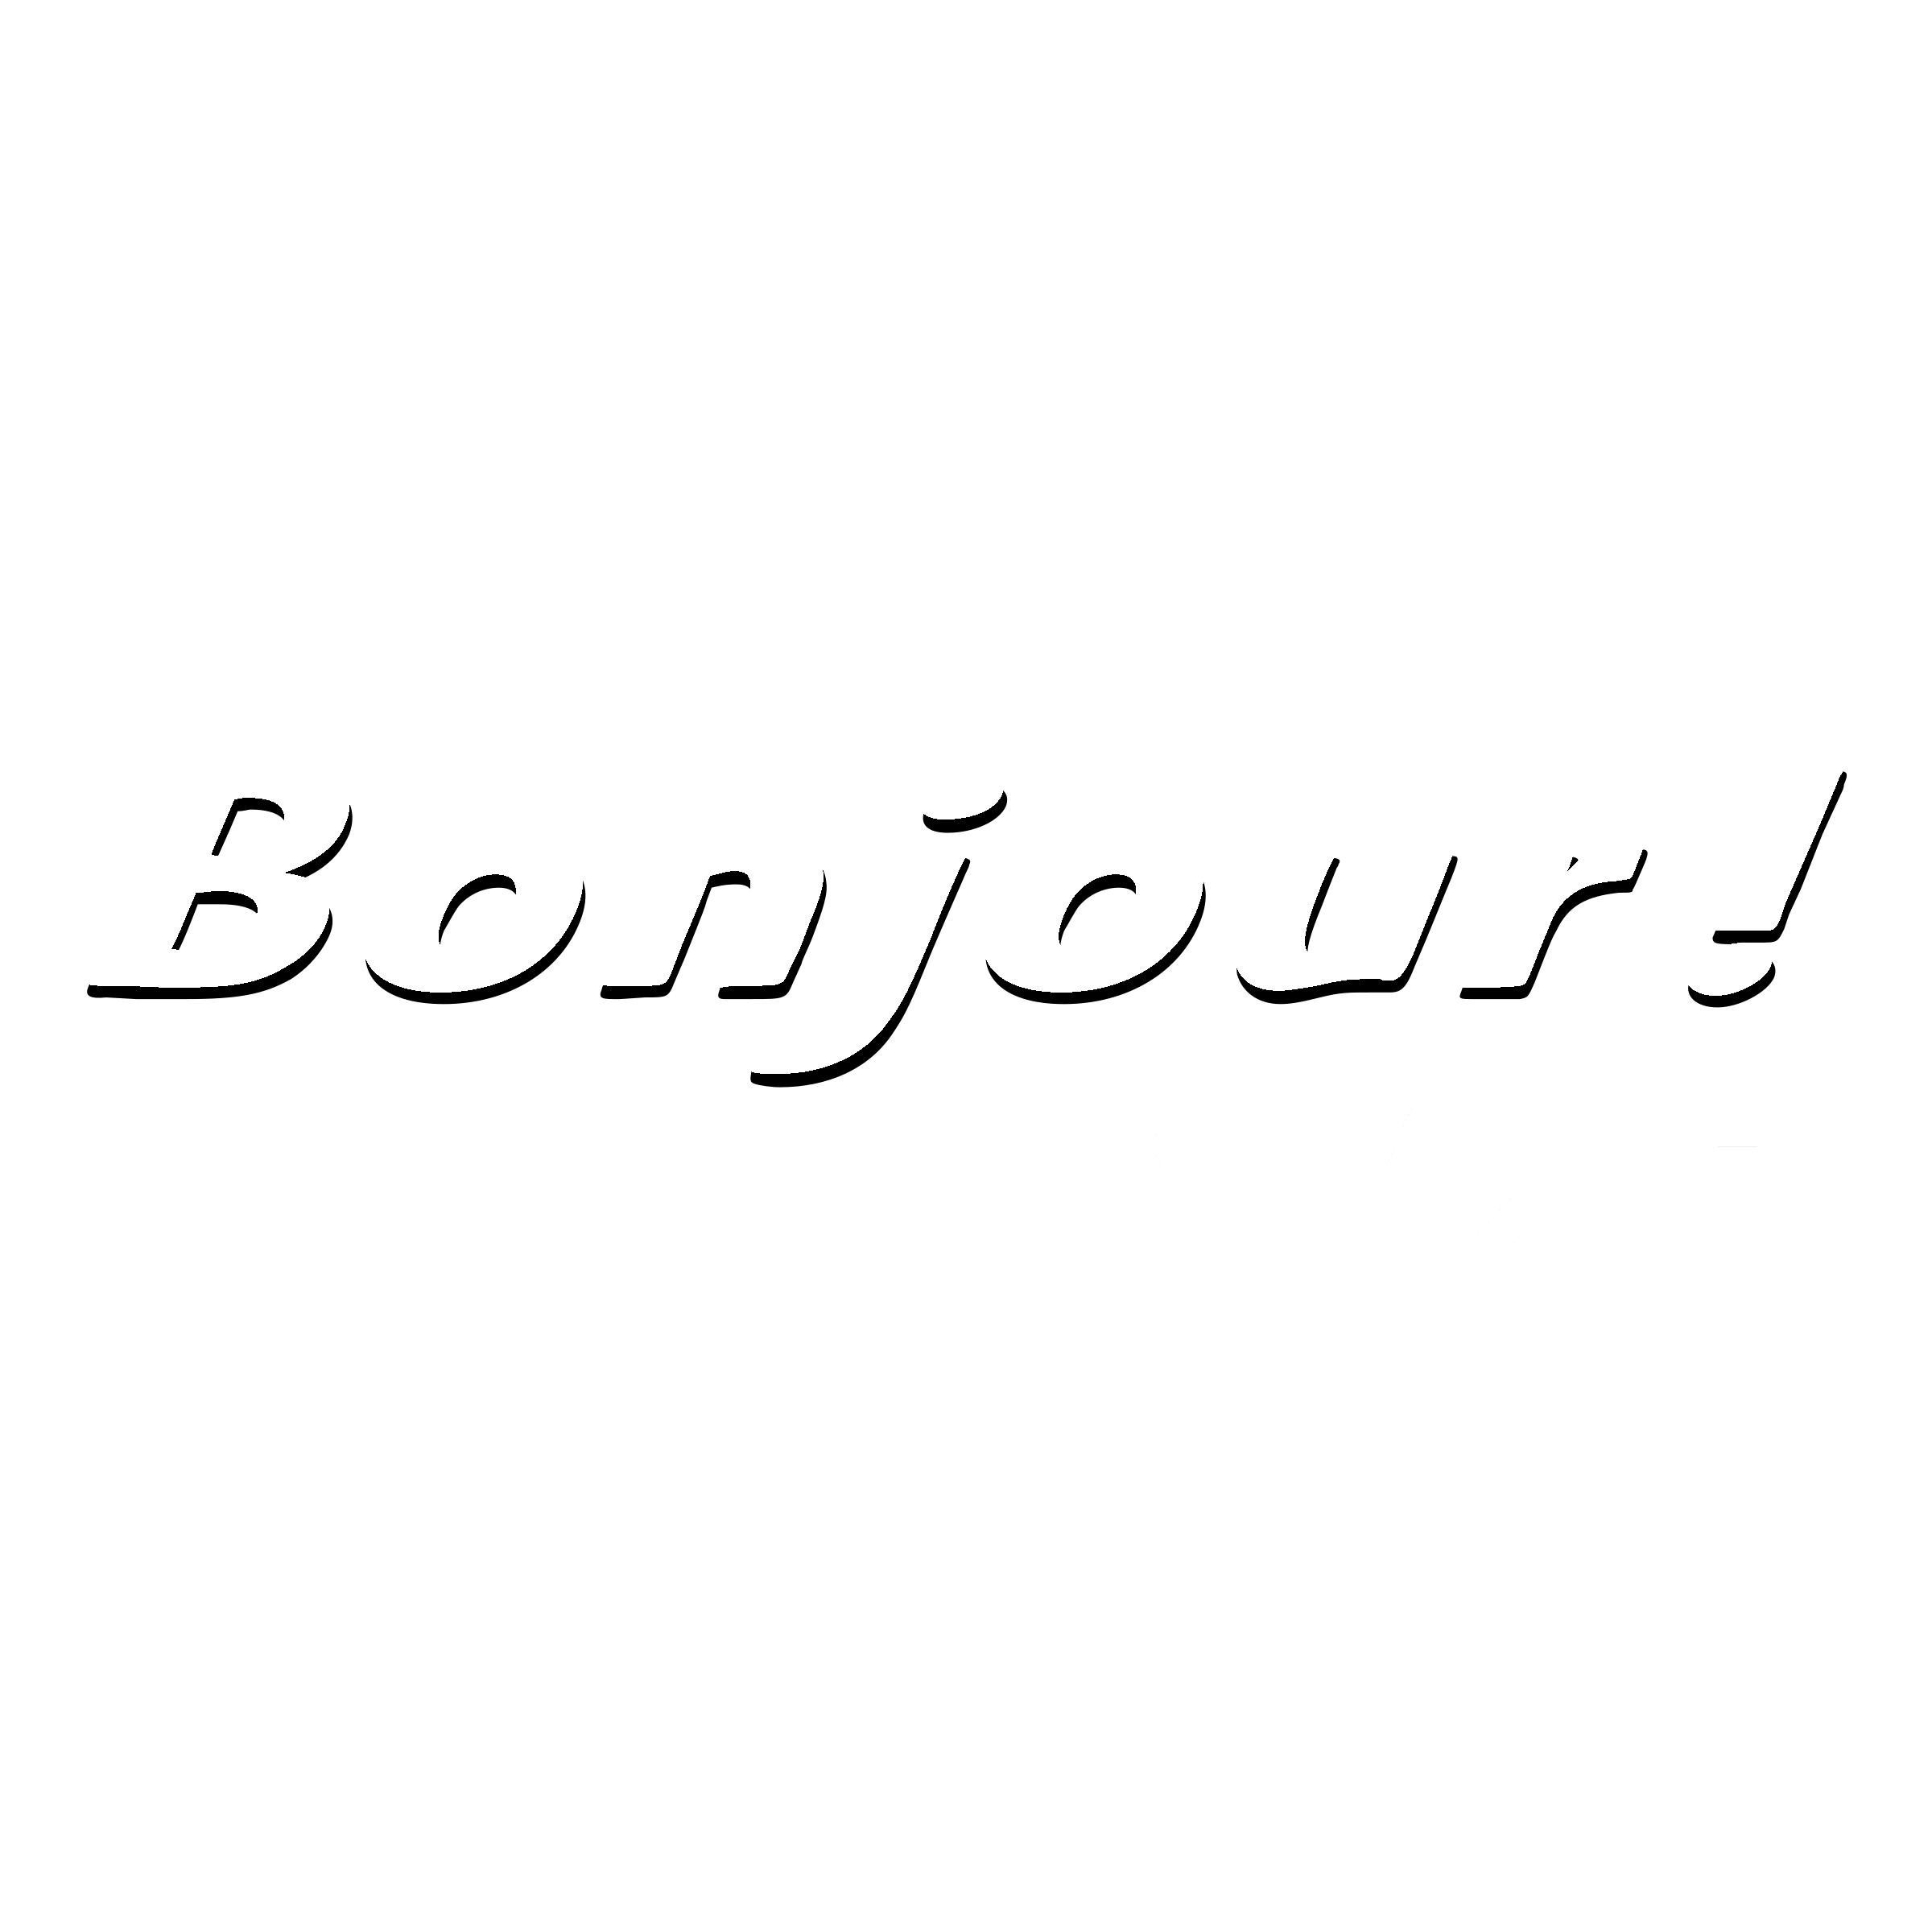 Bonjour Logo - Bonjour! Logo PNG Transparent & SVG Vector